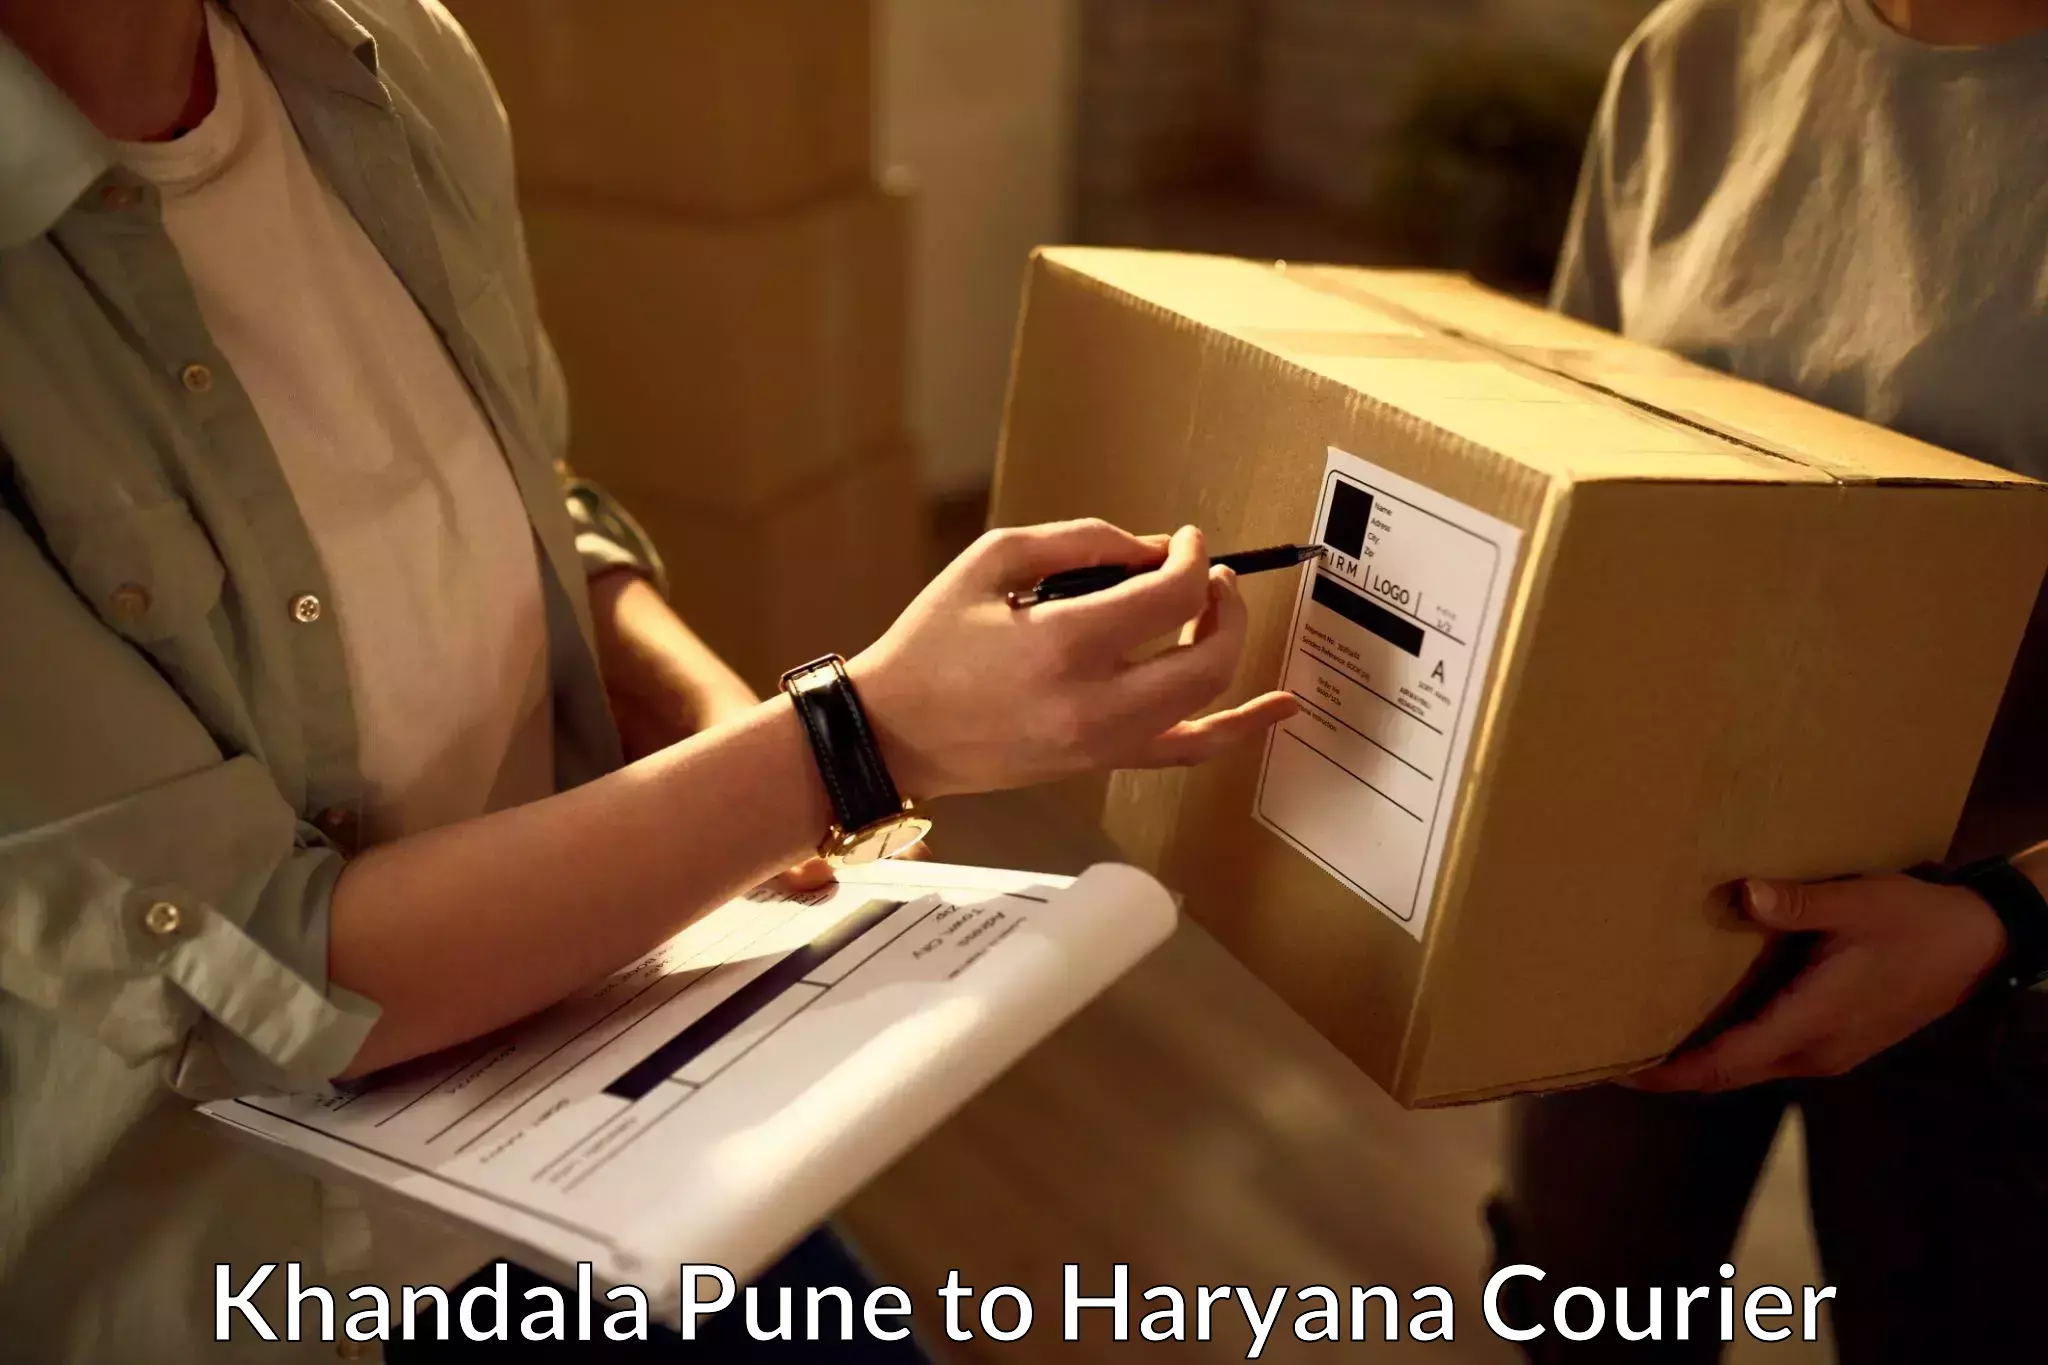 Courier service booking Khandala Pune to Chandi Rohtak